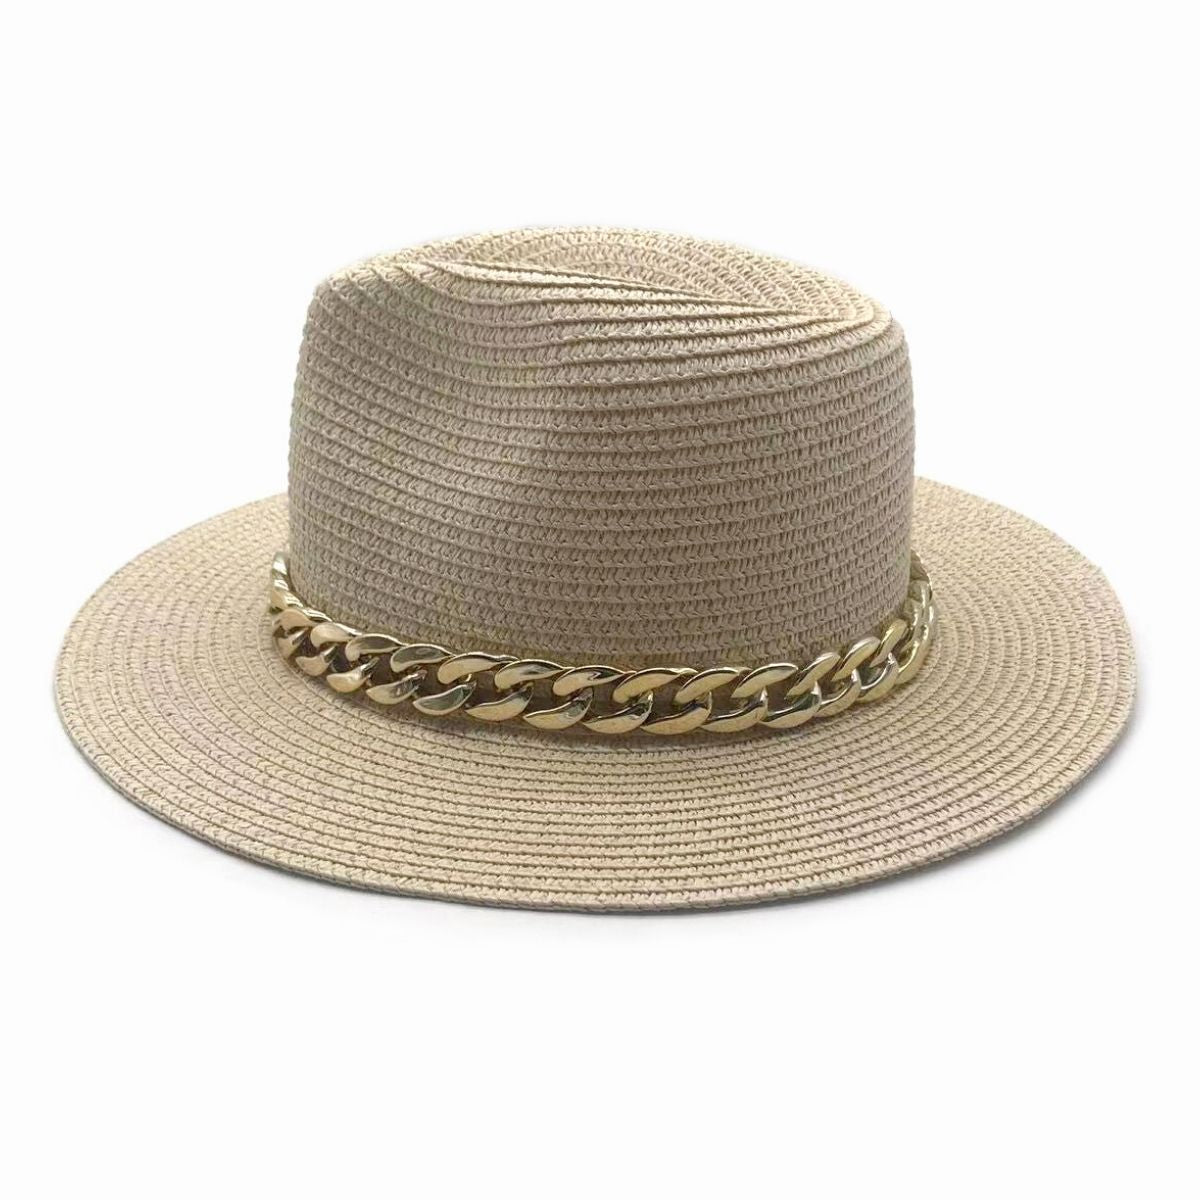 Ivory Chain Band Panama Hat